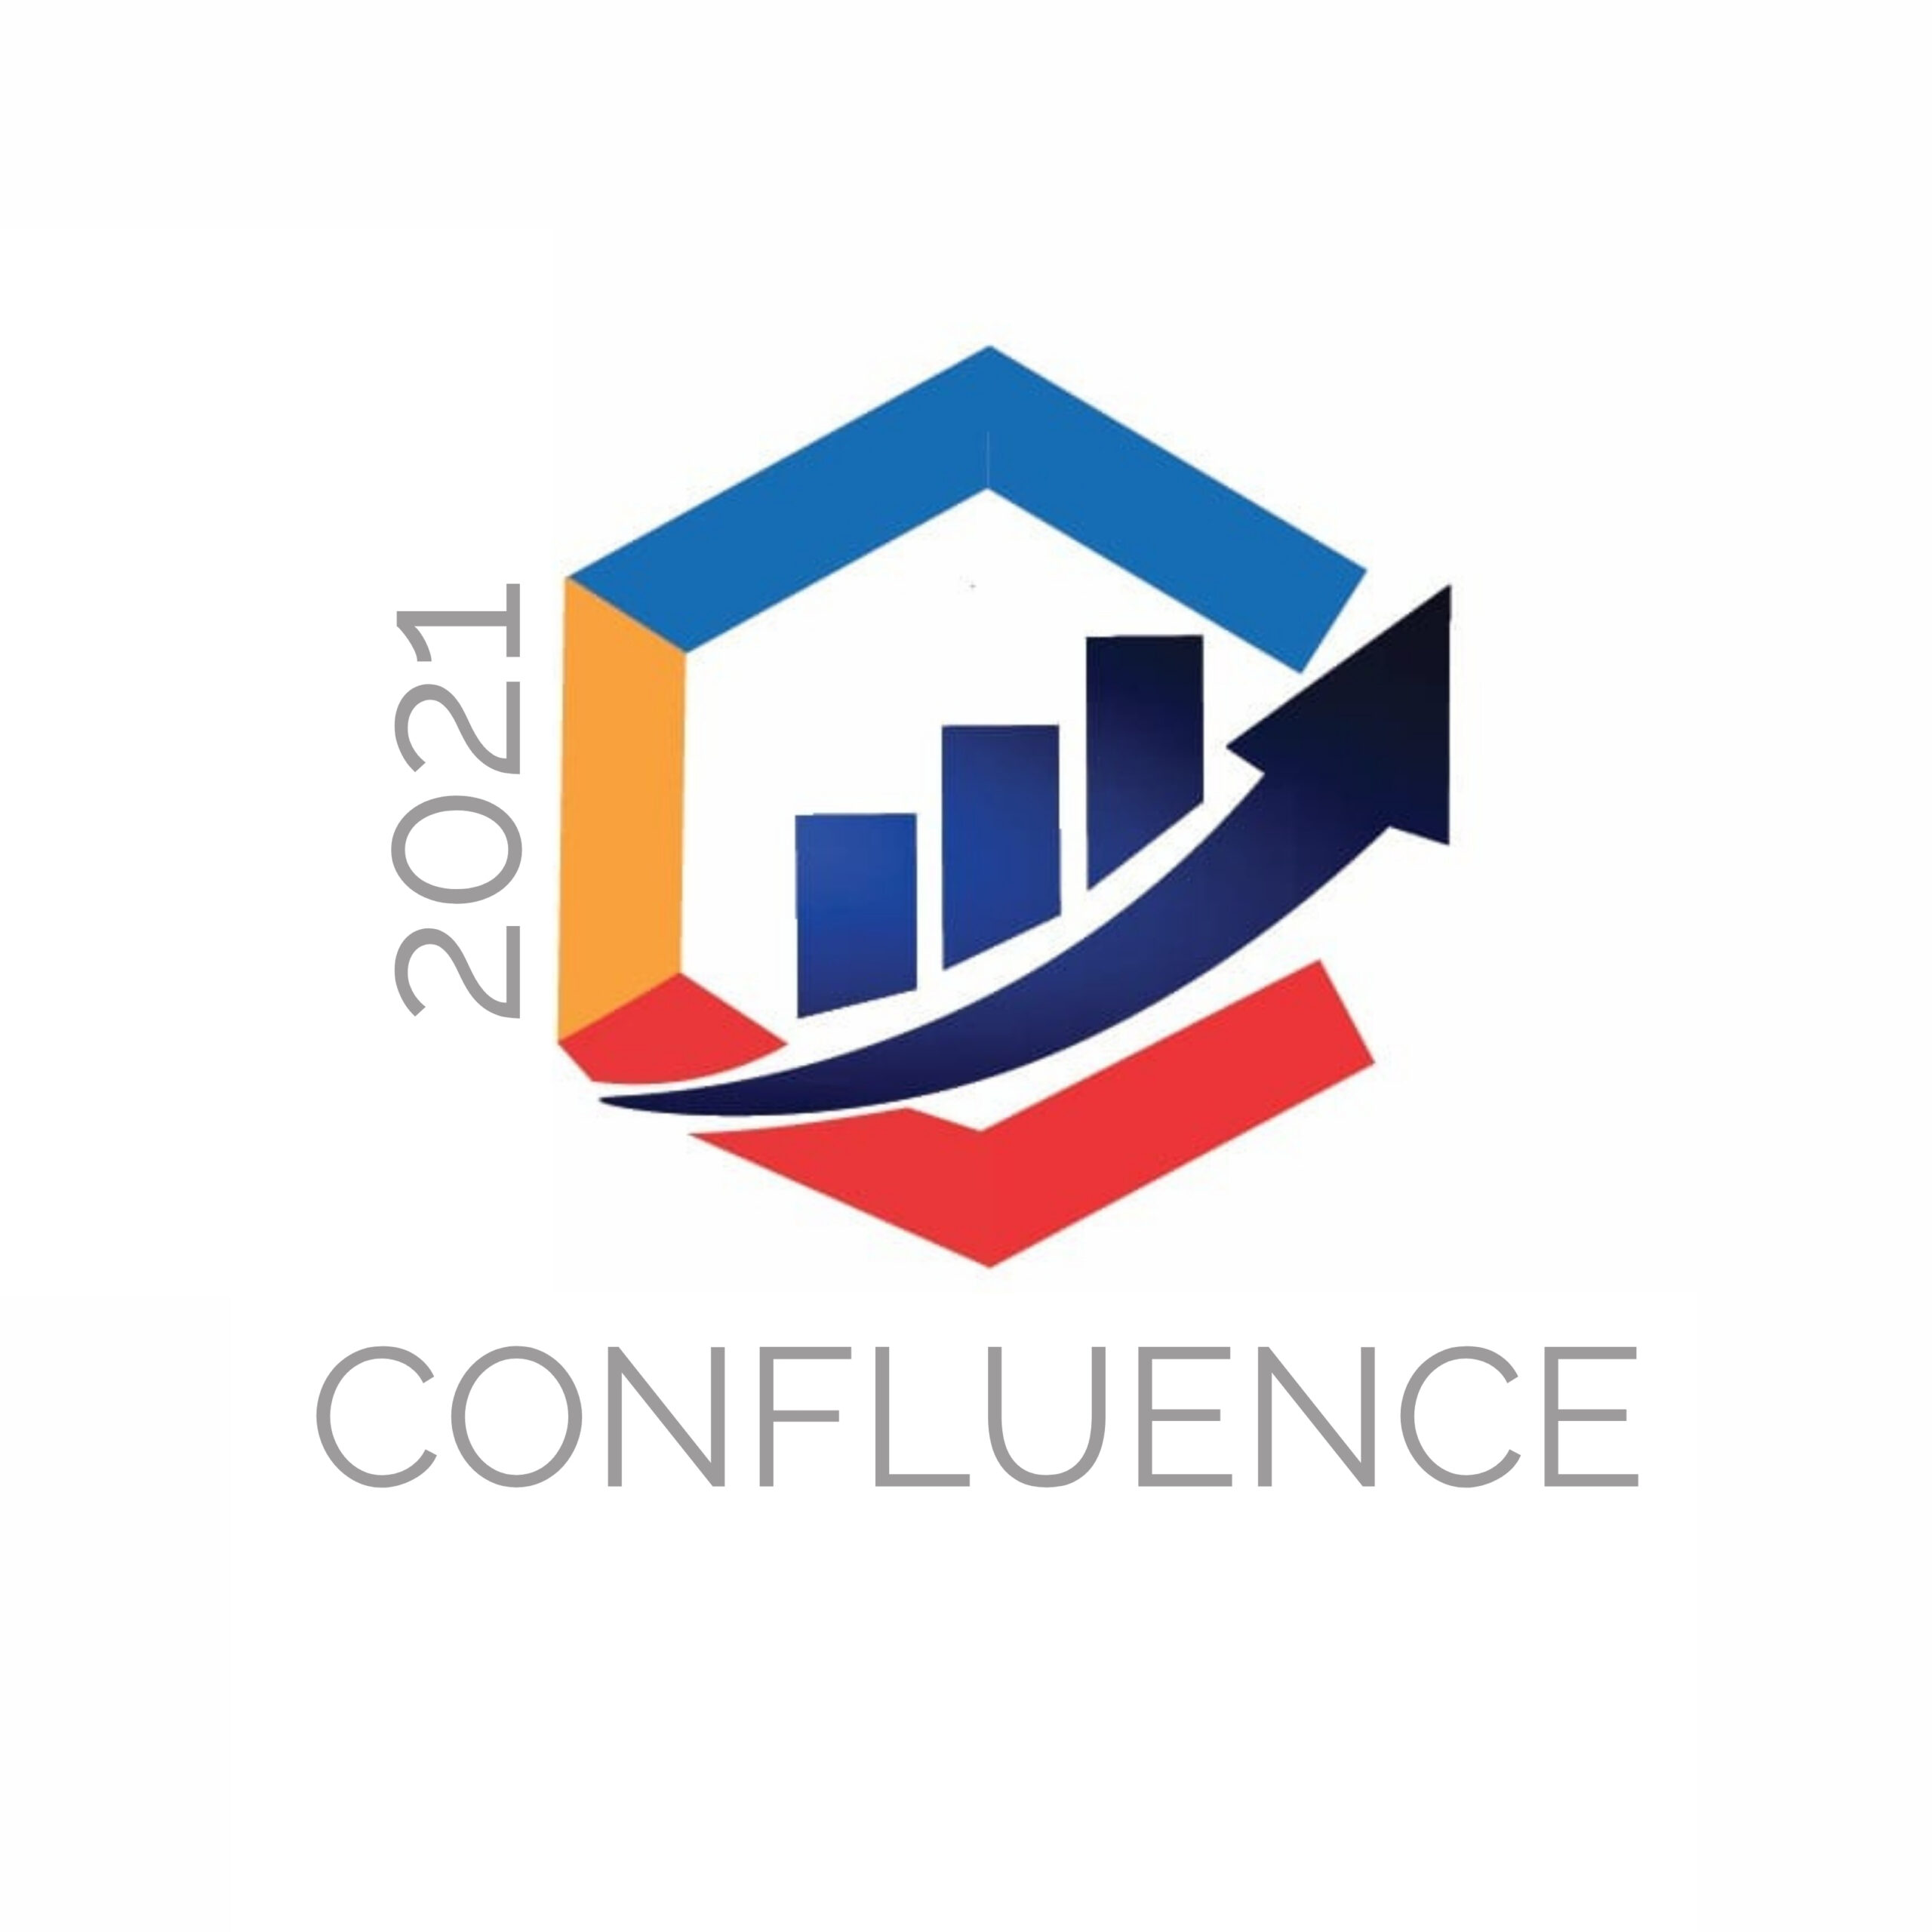 Confluence Logo